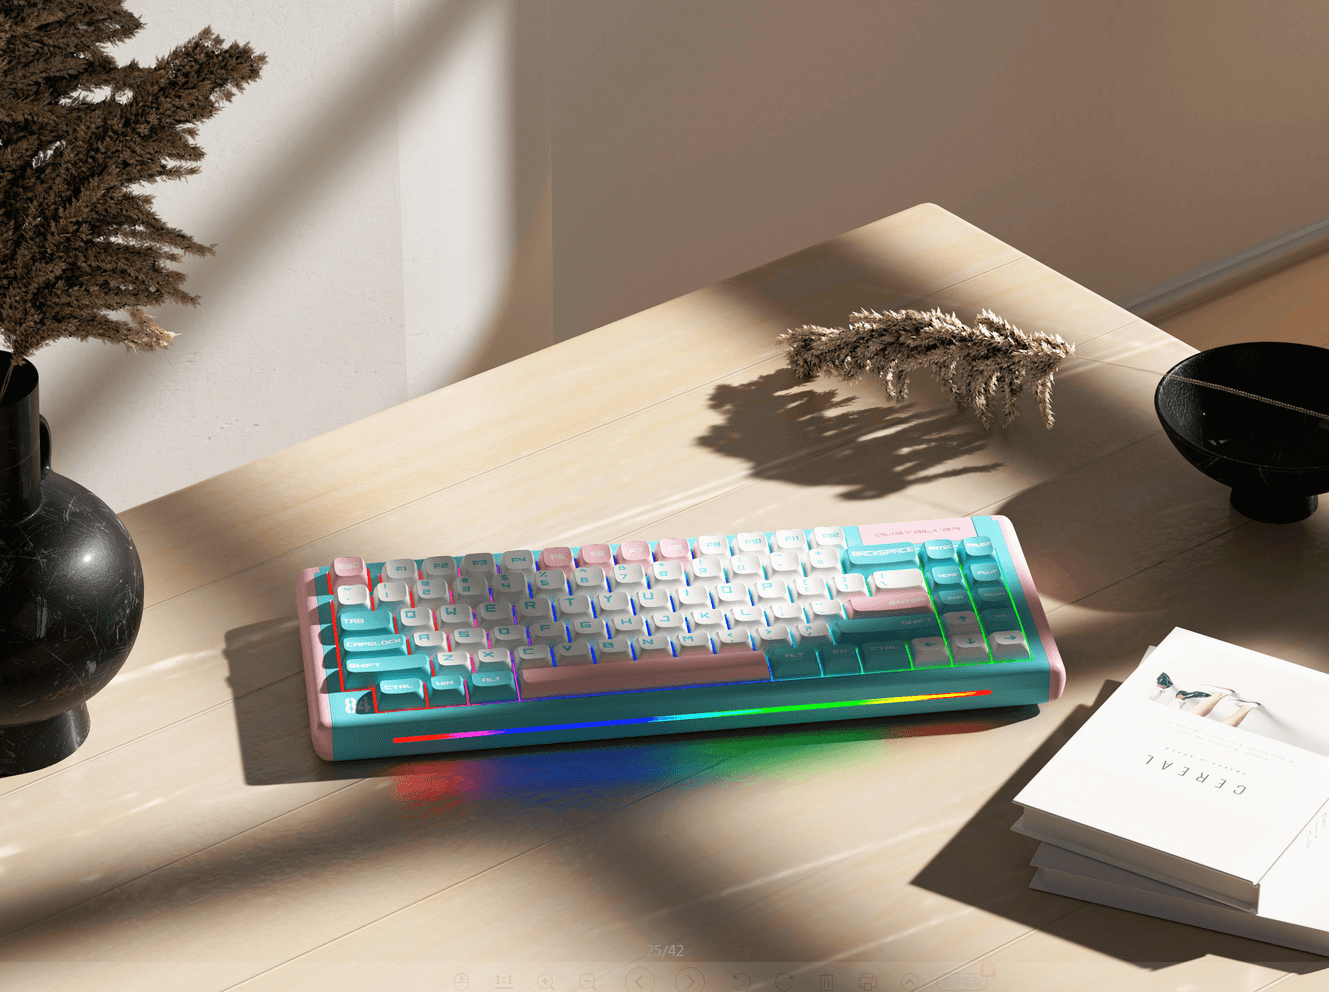 Why is a mechanical keyboard better - dustsilver